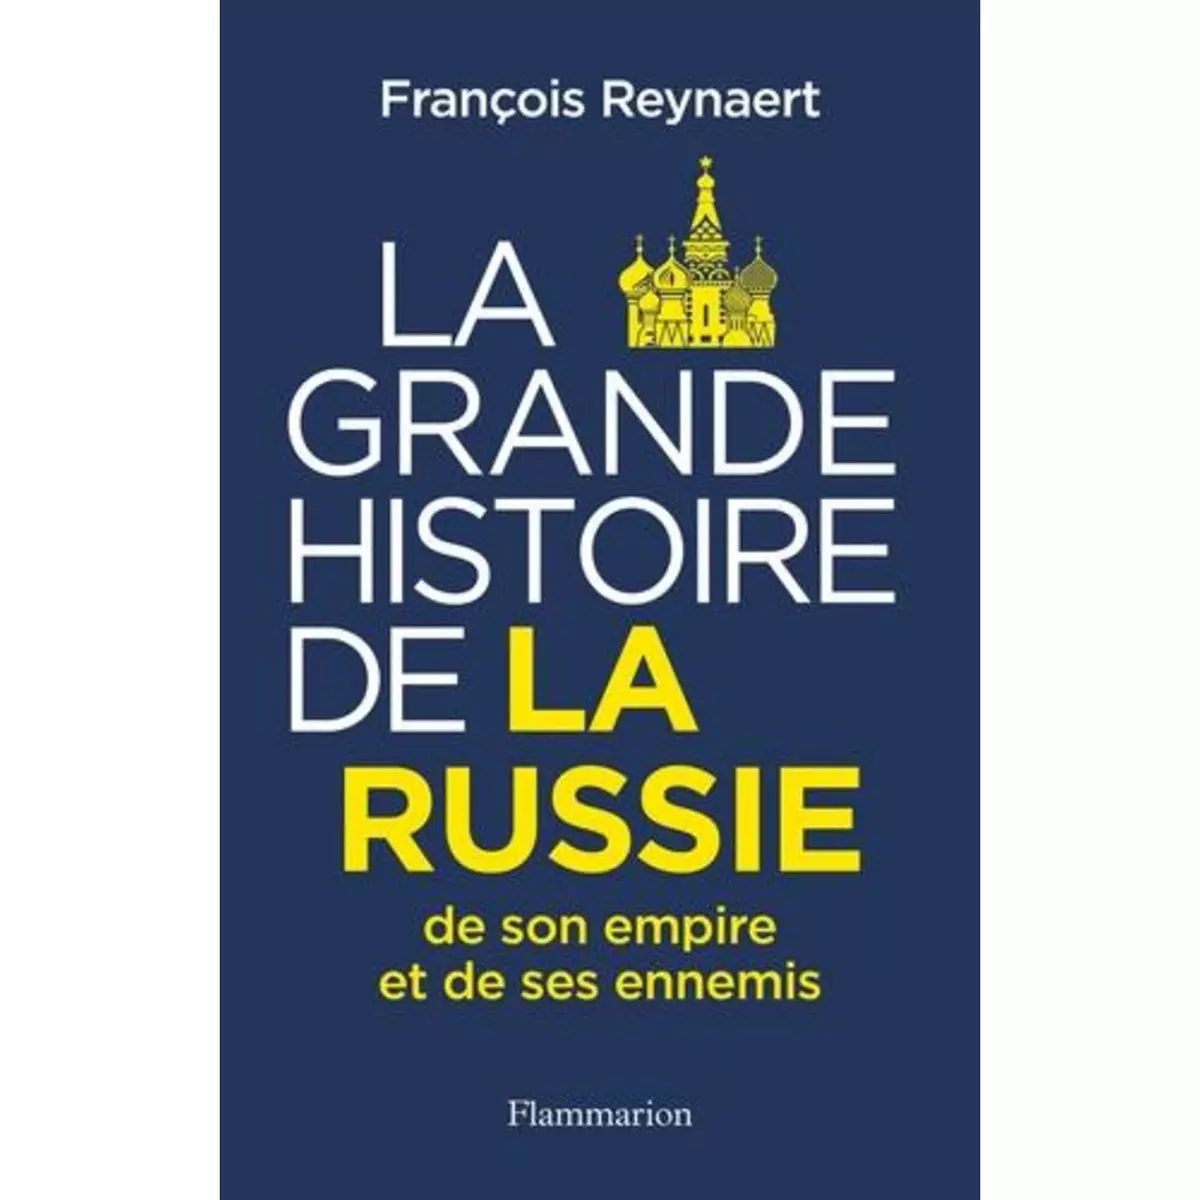  LA GRANDE HISTOIRE DE LA RUSSIE, DE SON EMPIRE ET DE SES ENNEMIS, Reynaert François